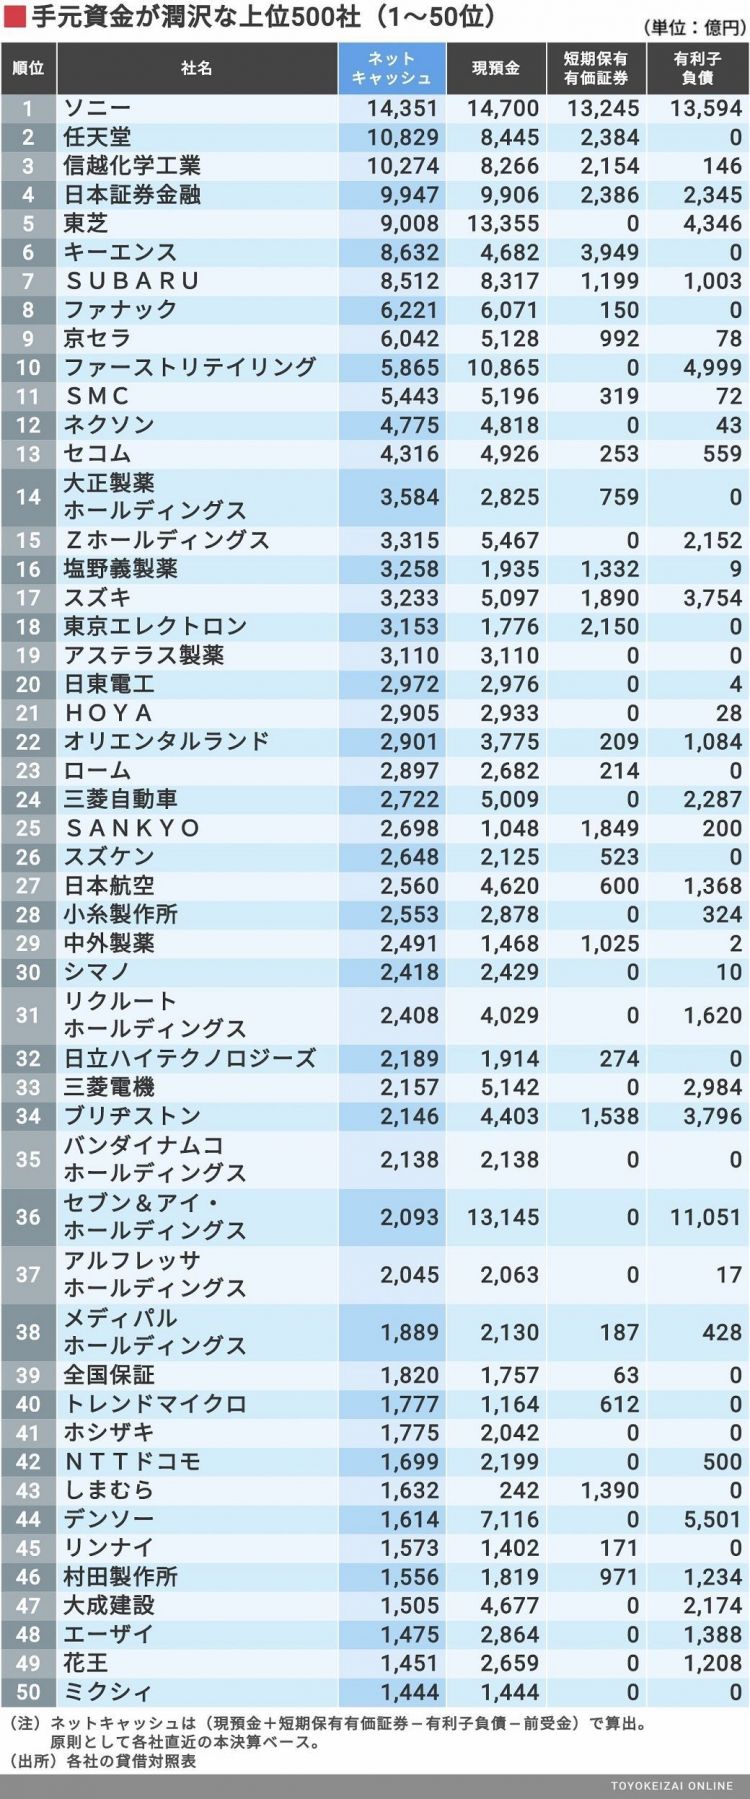 2019年日本企业现金流量排行榜公布，索尼再次夺得首位